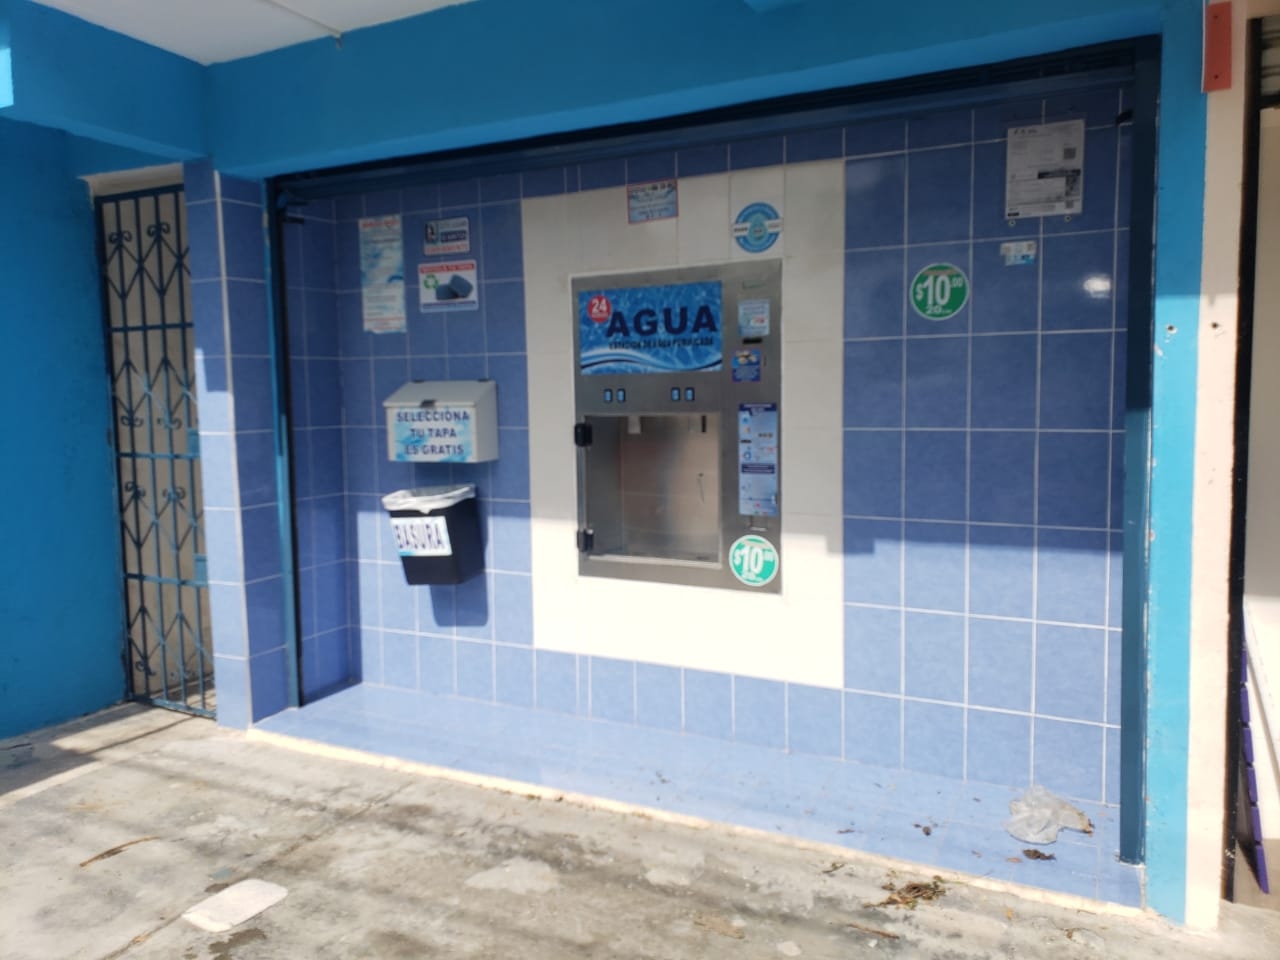 17 despachadoras de agua purificada incumplen protocolos de sanidad en Quintana Roo